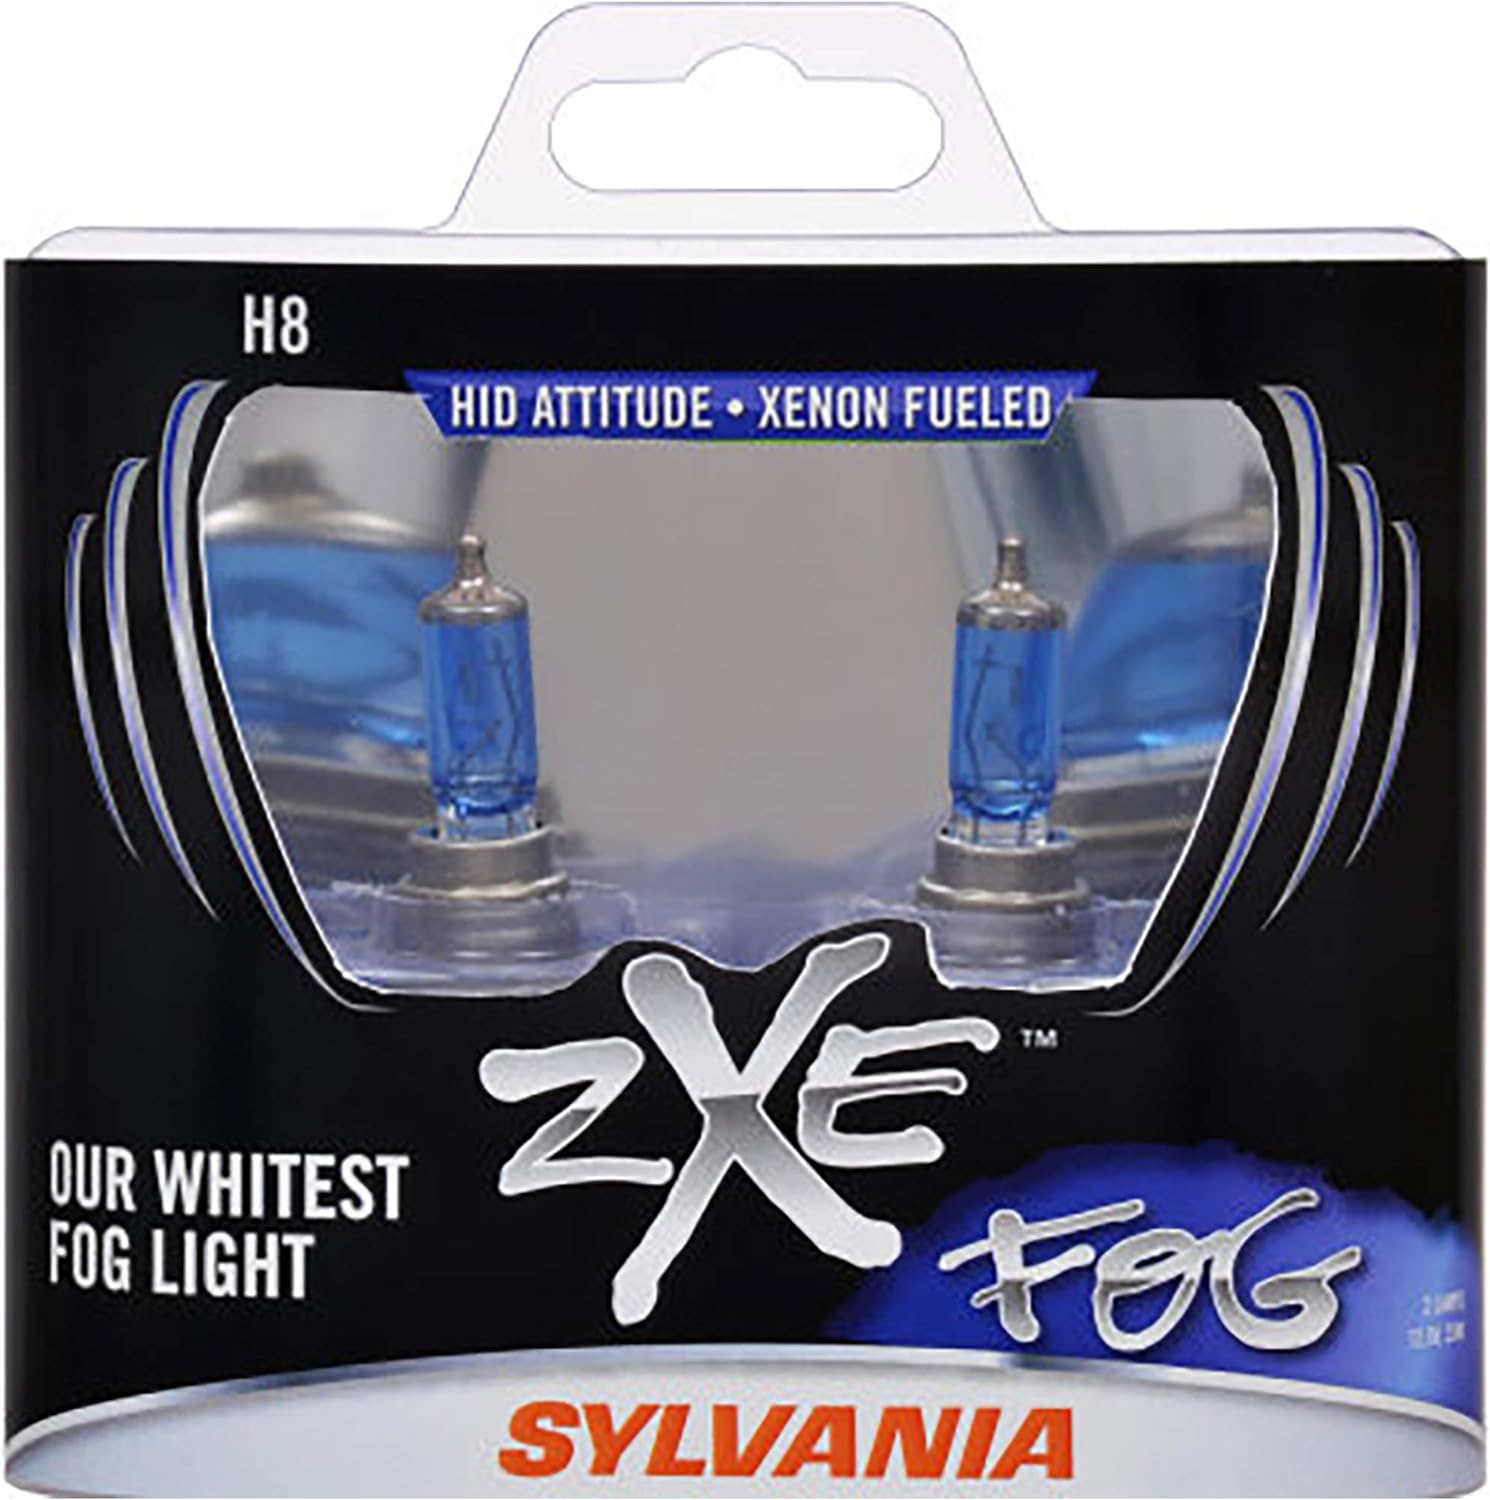 SYLVANIA H8 zXe High Performance Halogen Fog Light Bulb, (Contains 2 Bulbs)